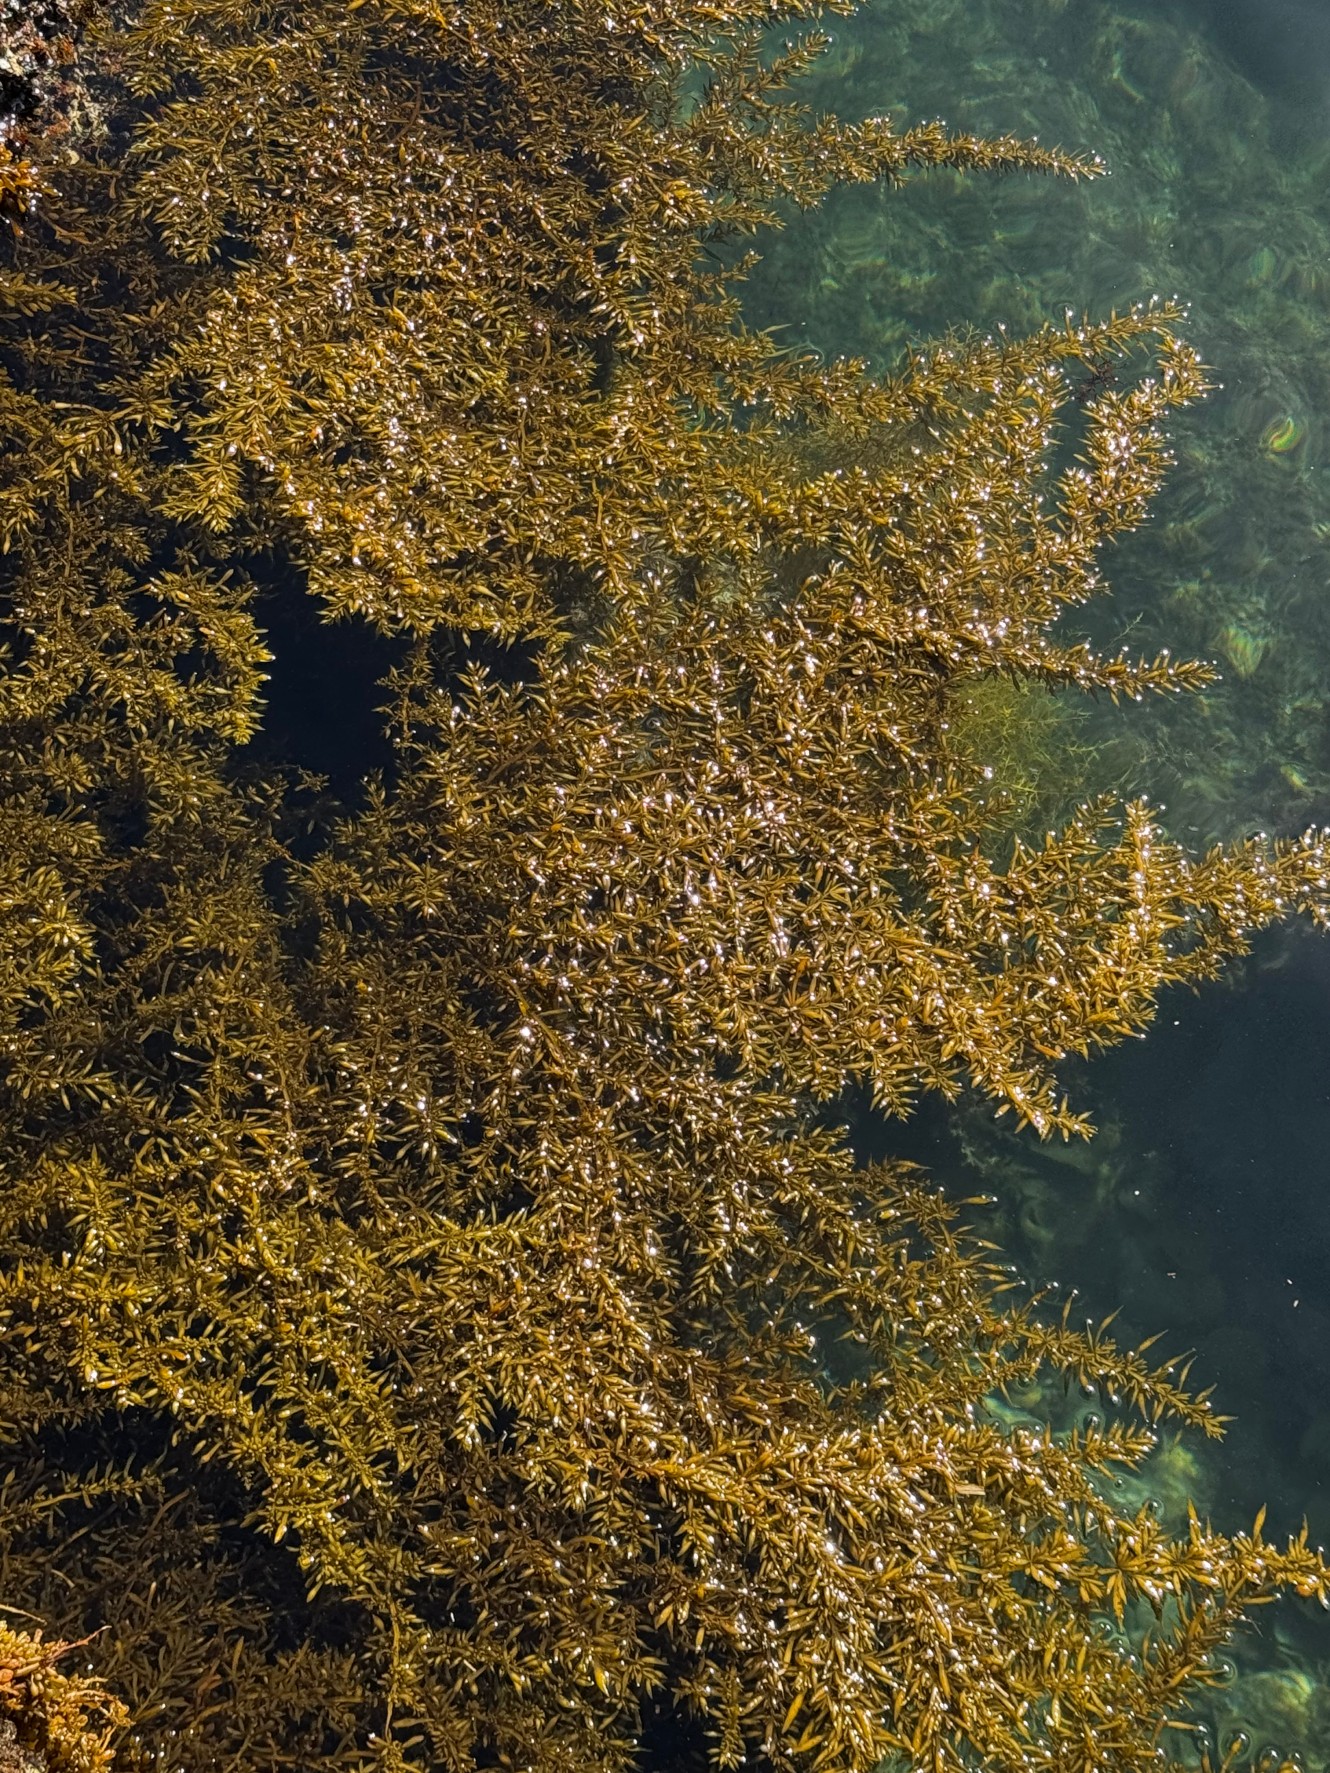 海藻が多いところがアオリイカ魚影も濃いが、釣るのは難しい。そんな時は泳がせ仕掛けが強い。釣太郎